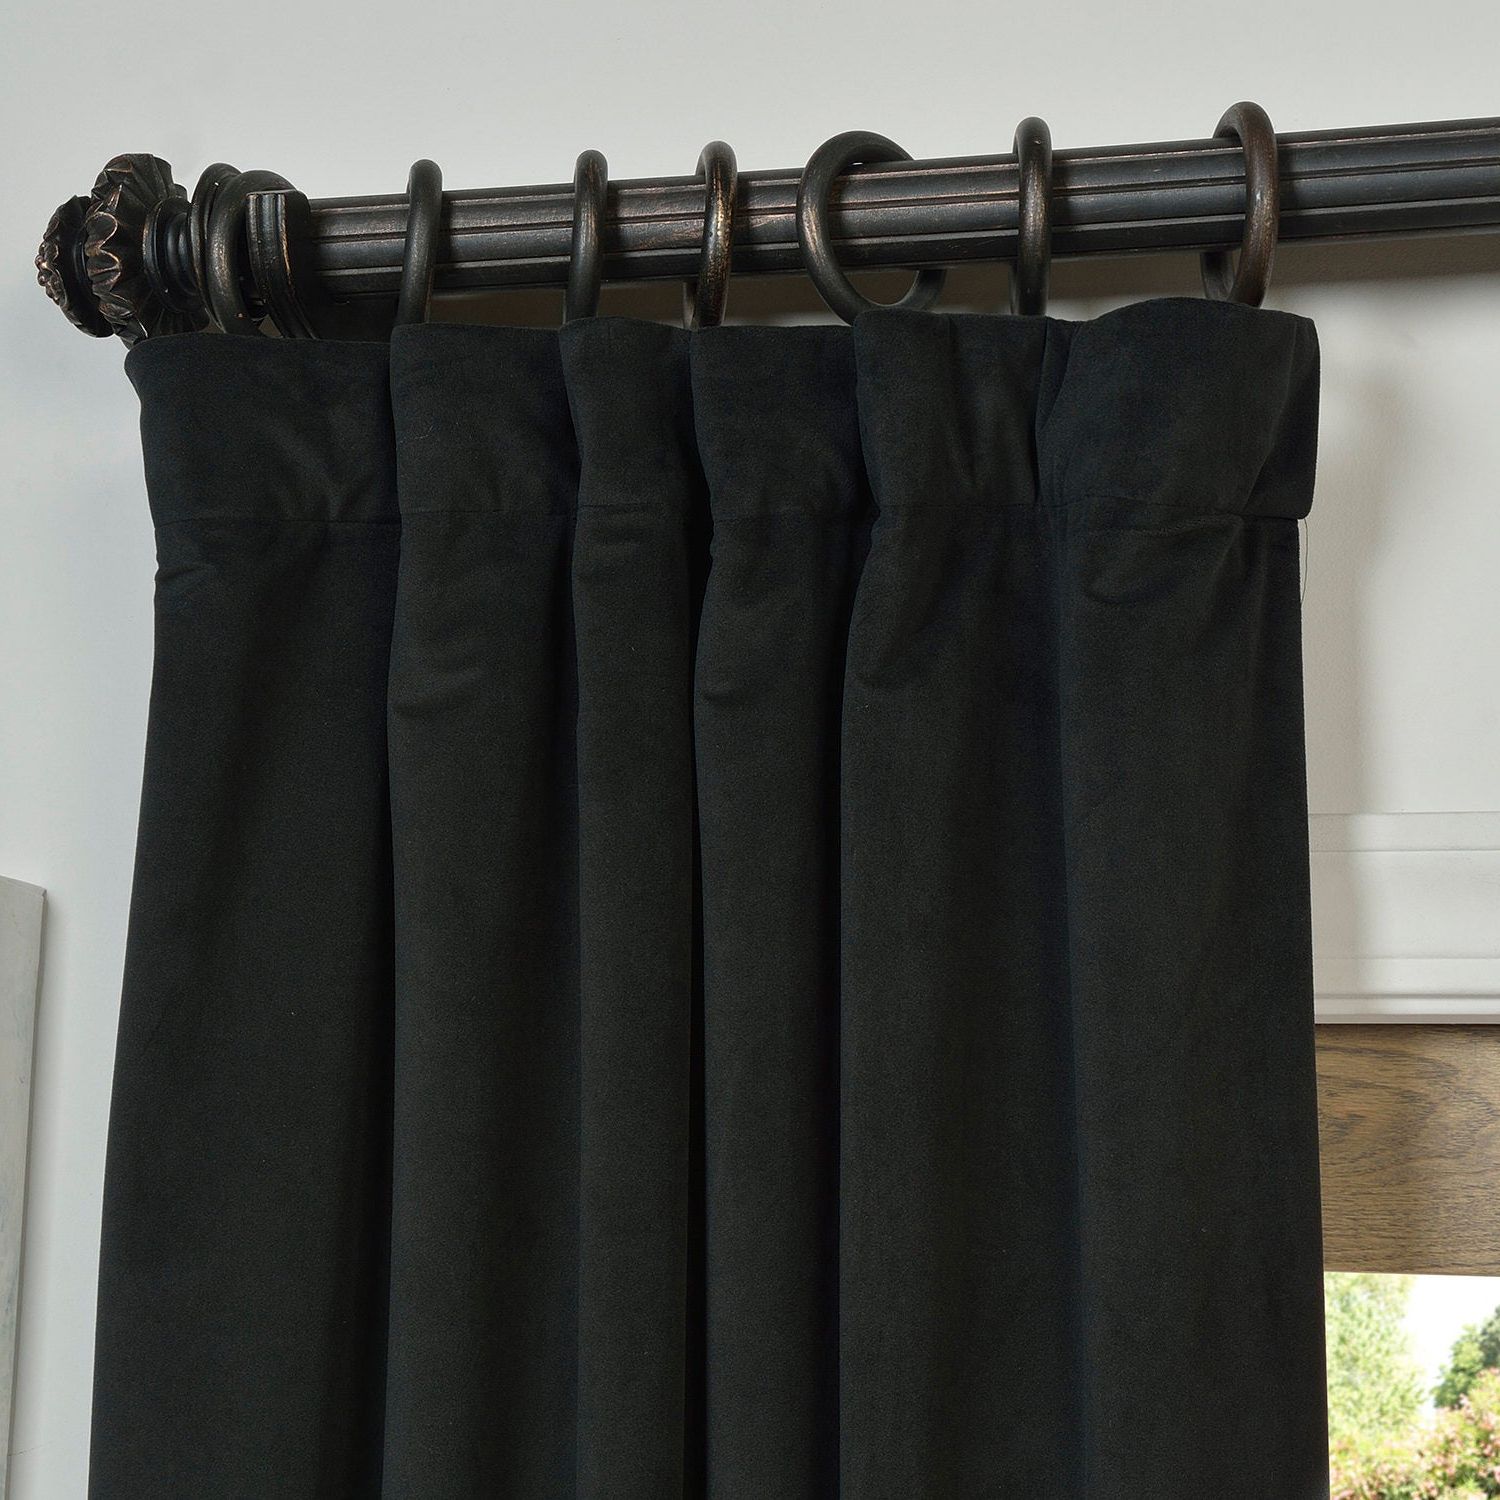 2022 Best of Warm Black Velvet Single Blackout Curtain Panels